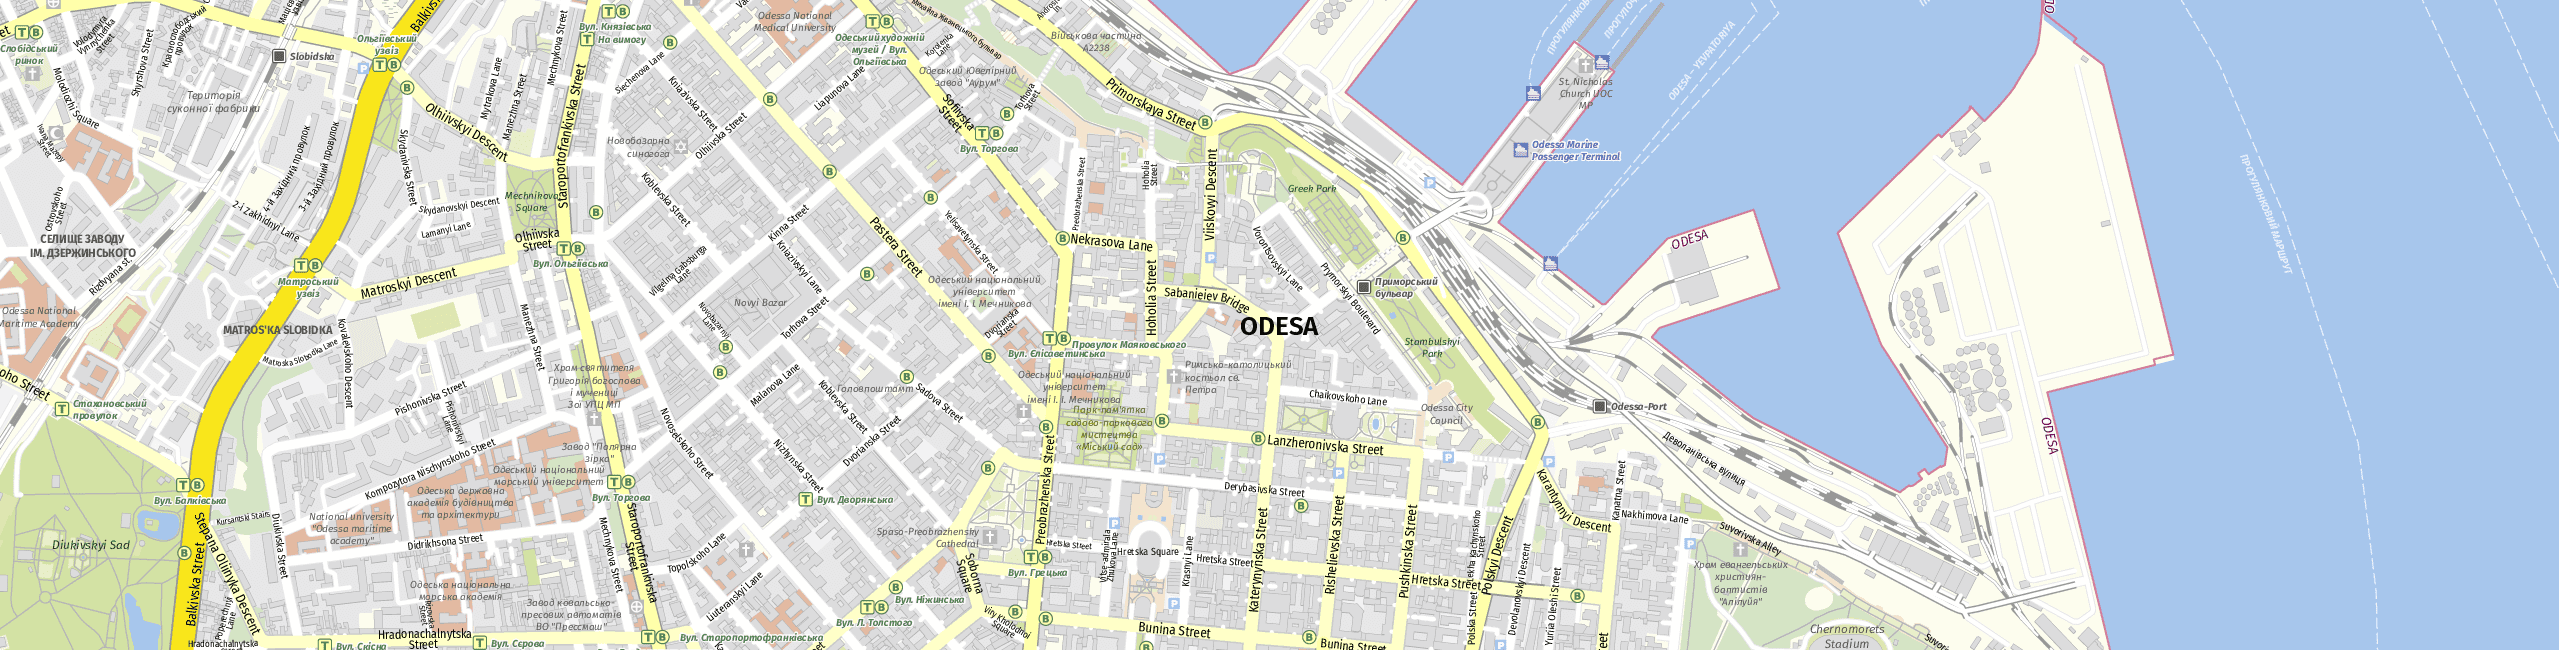 Stadtplan Odesa zum Downloaden.